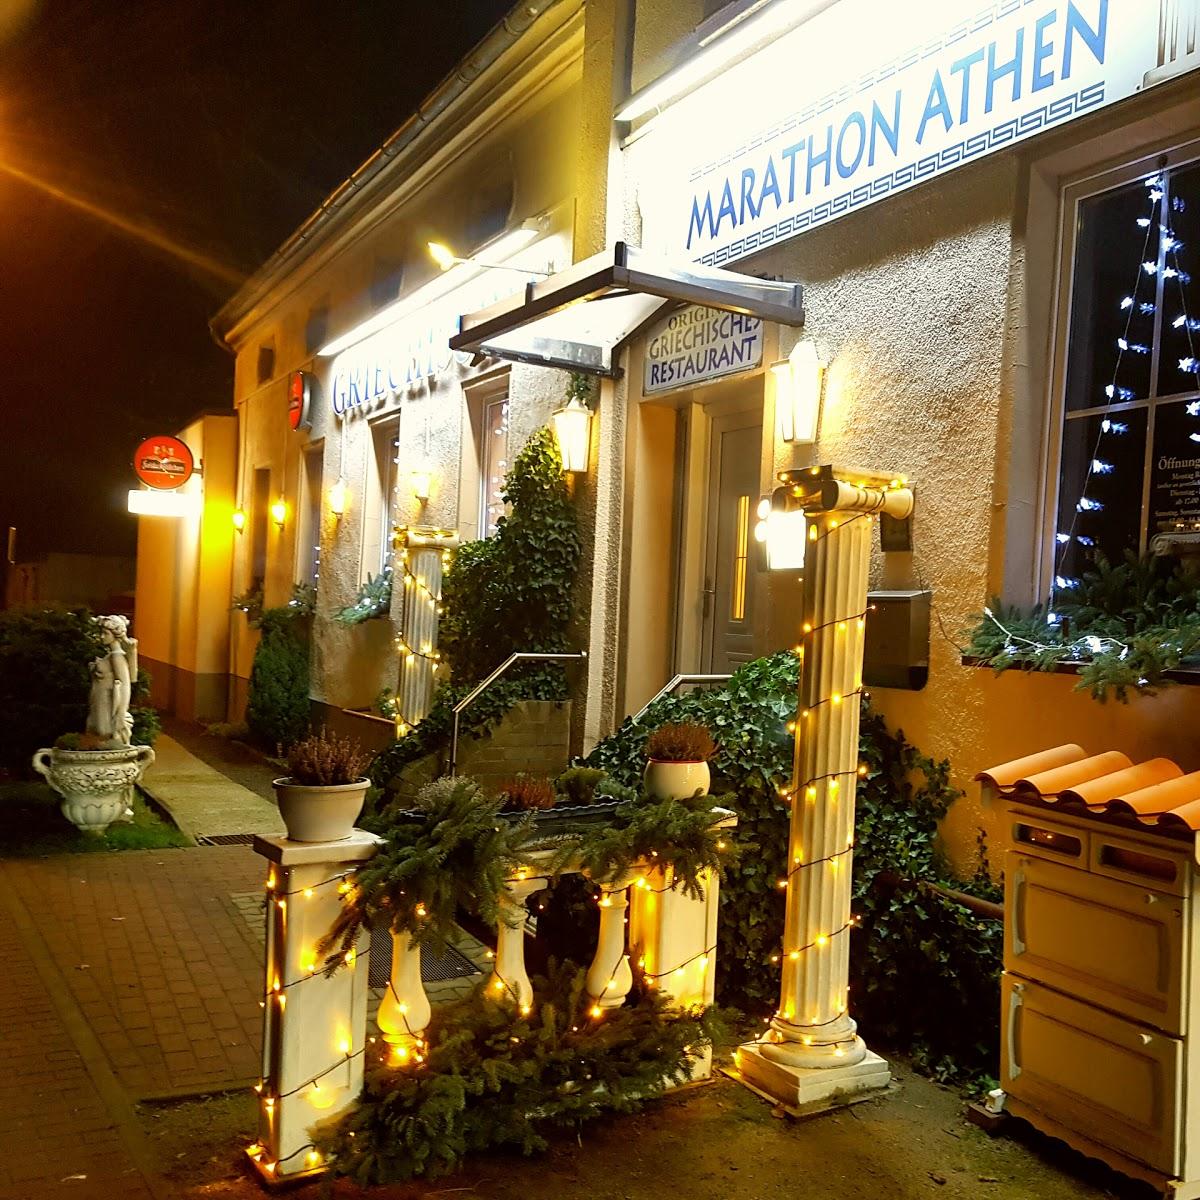 Restaurant "Marathon Athen" in Peitz